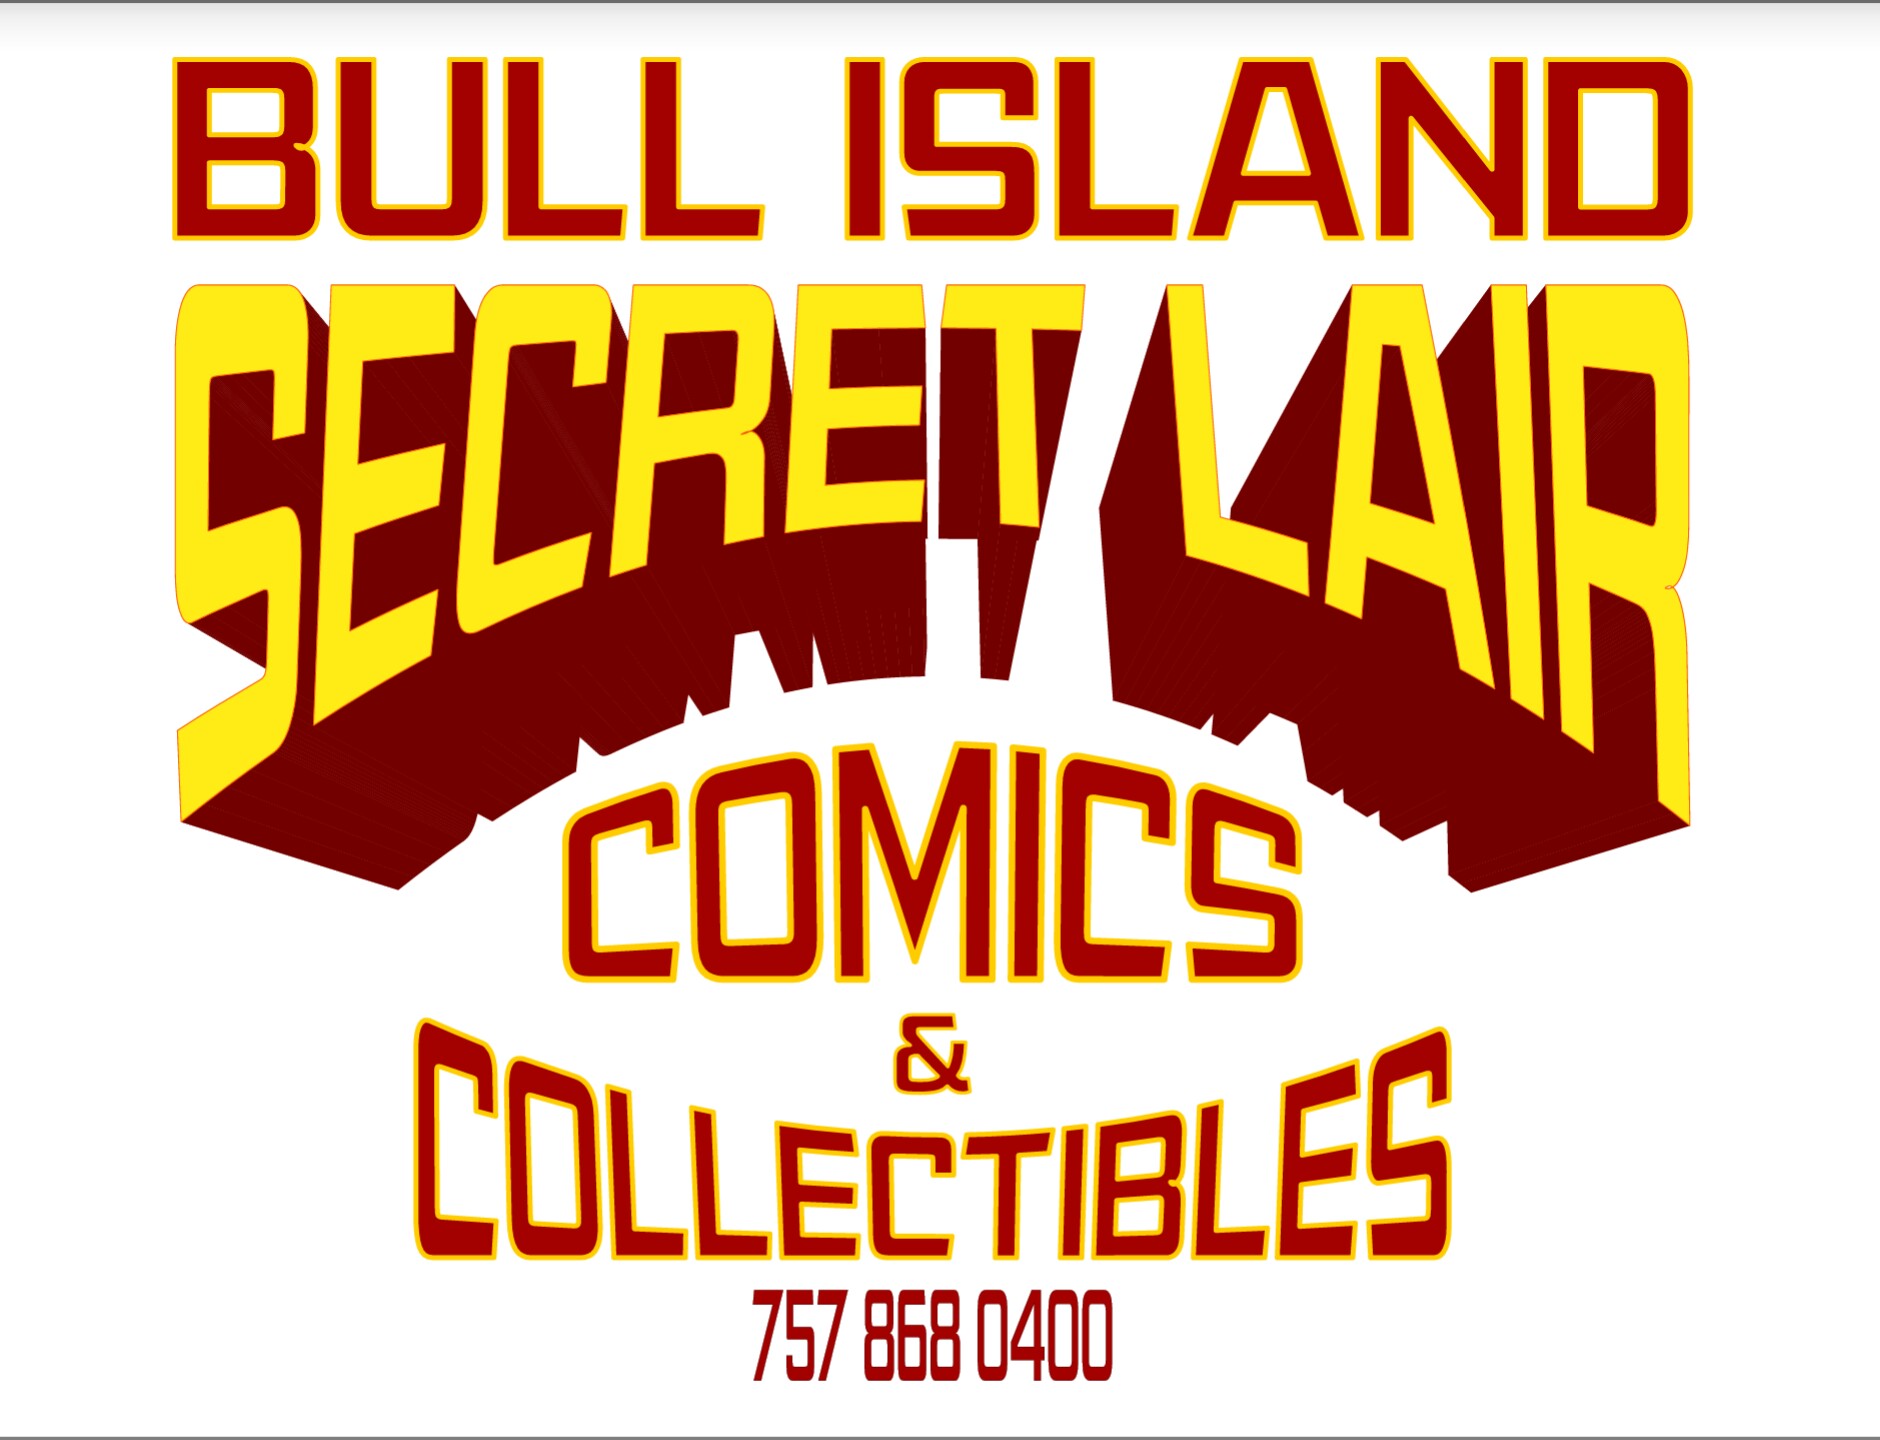 BULL ISLAND SECRET LAIR COMICS & COLLECTIBLES